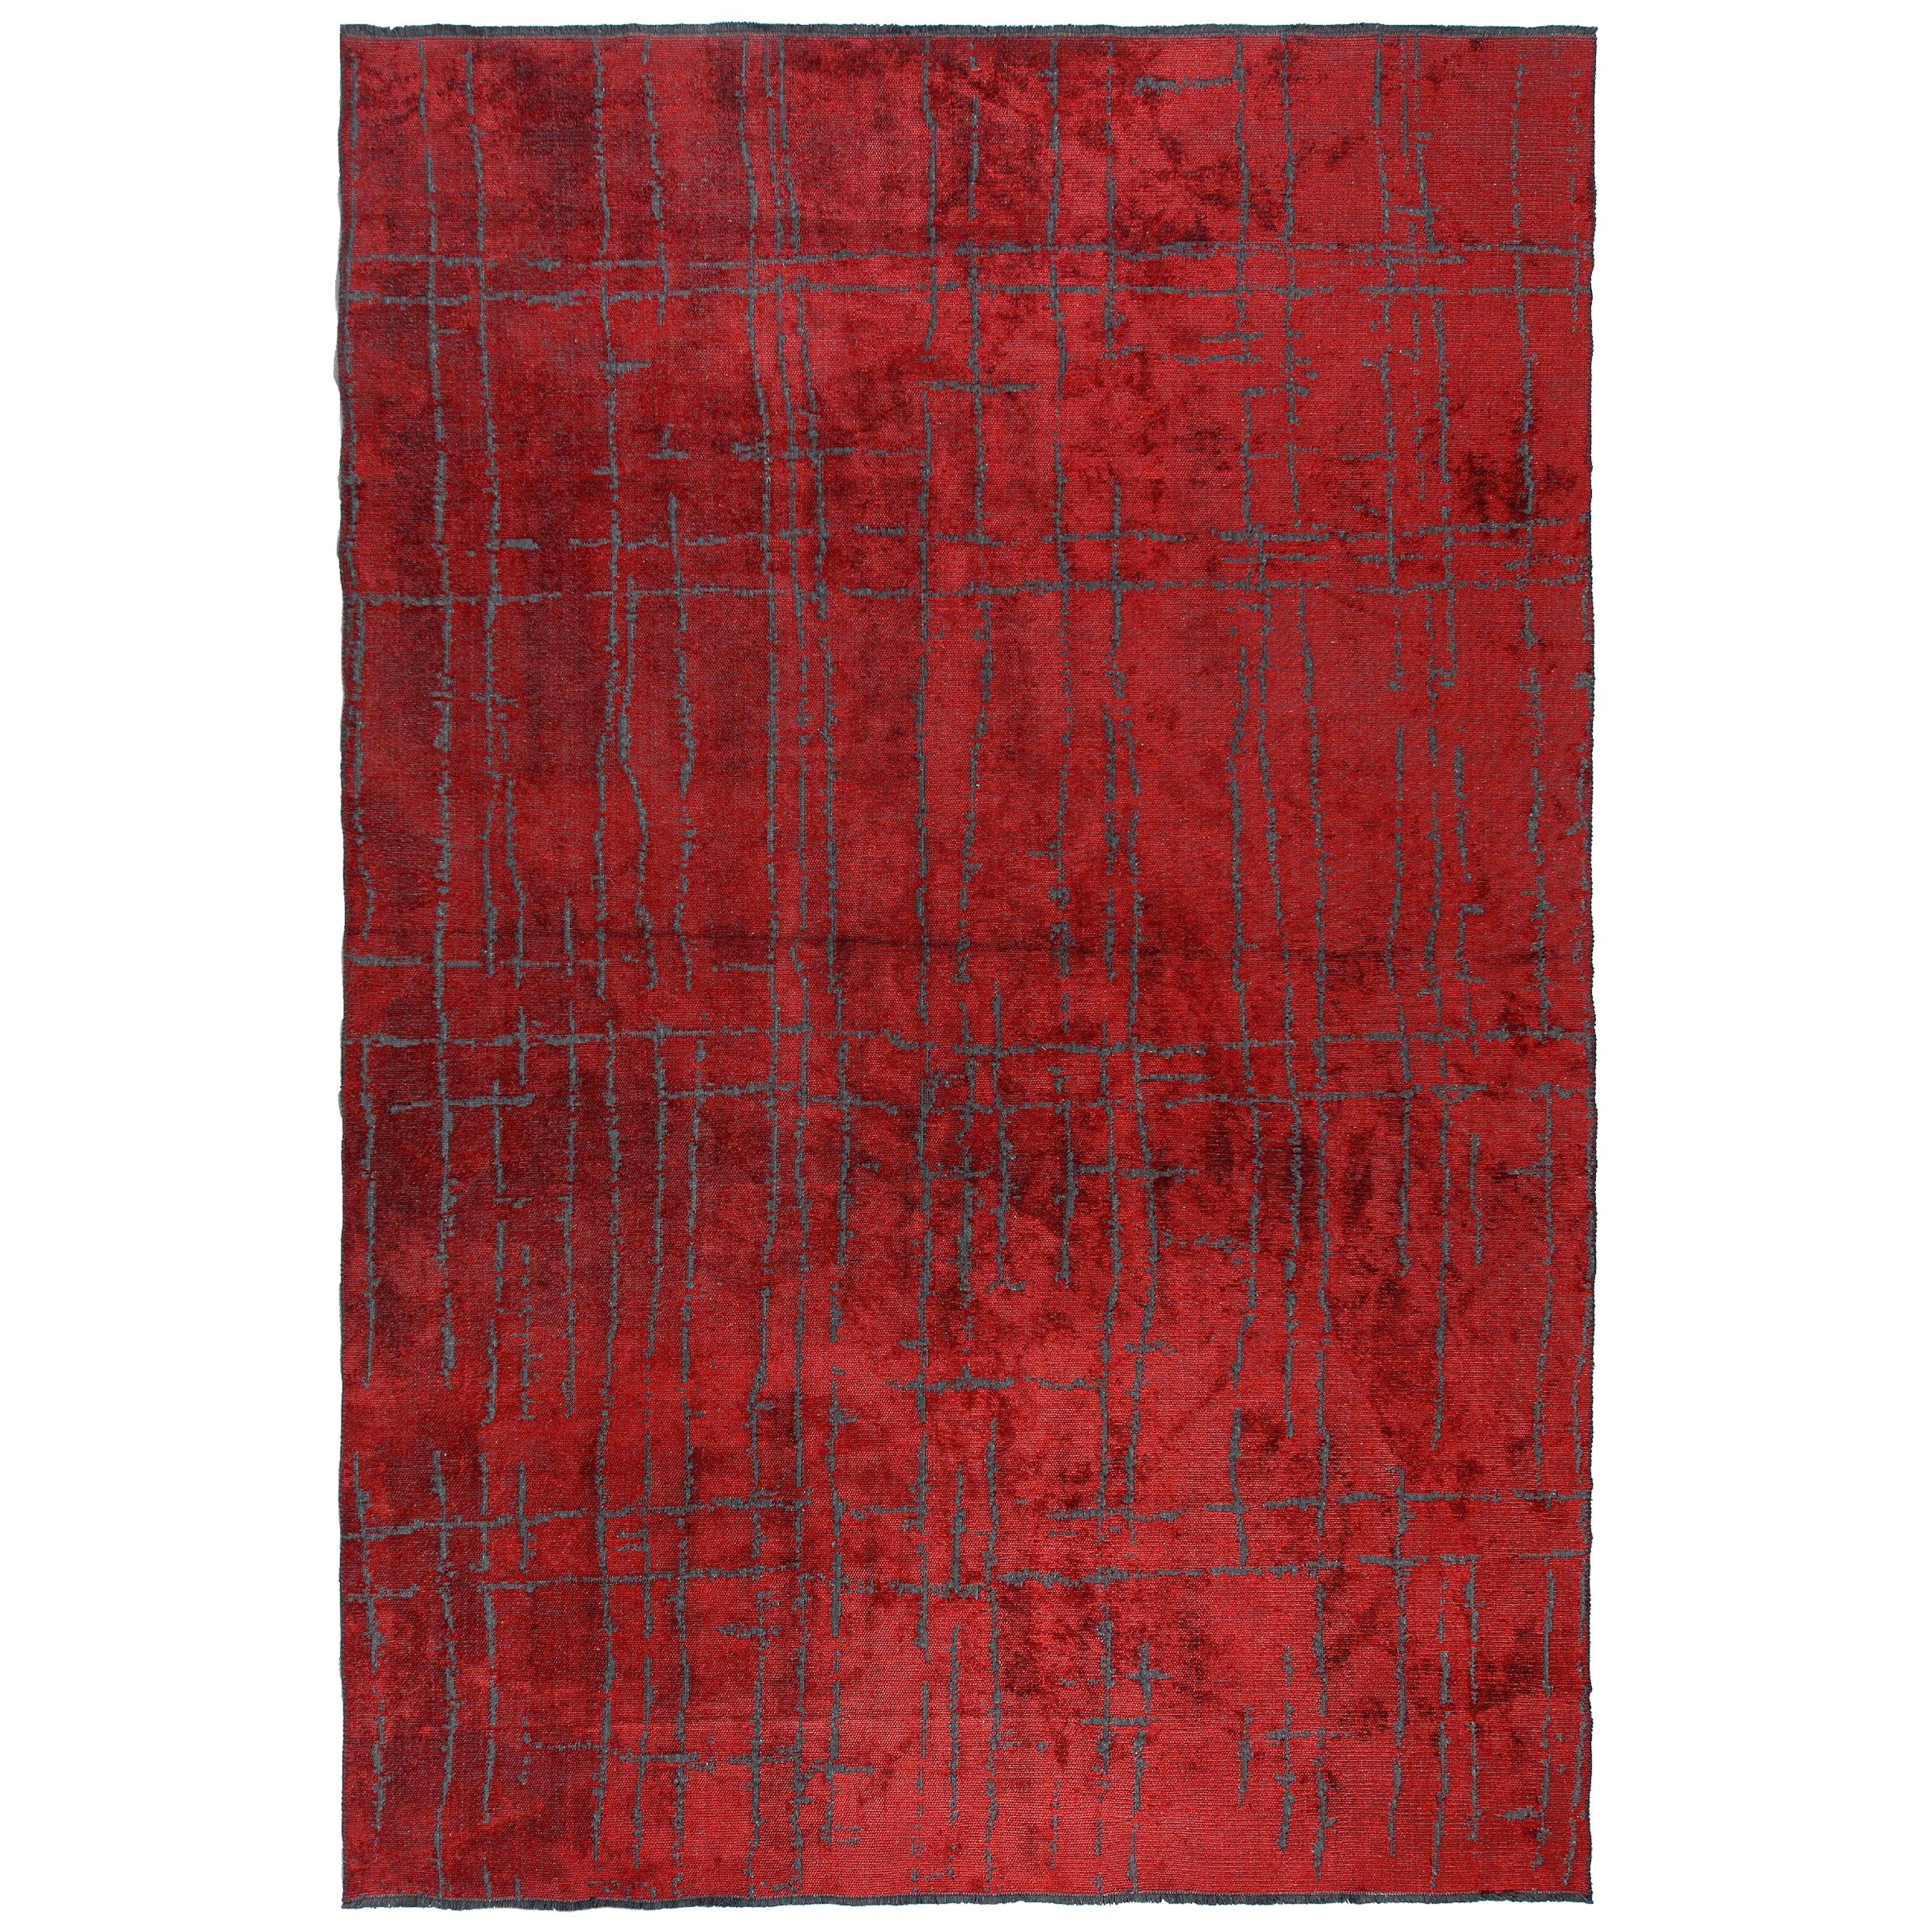  Modernistischer, Weicher Luxus-Semi-Plüsch-Teppich in Rot mit zeitgenössischem Design